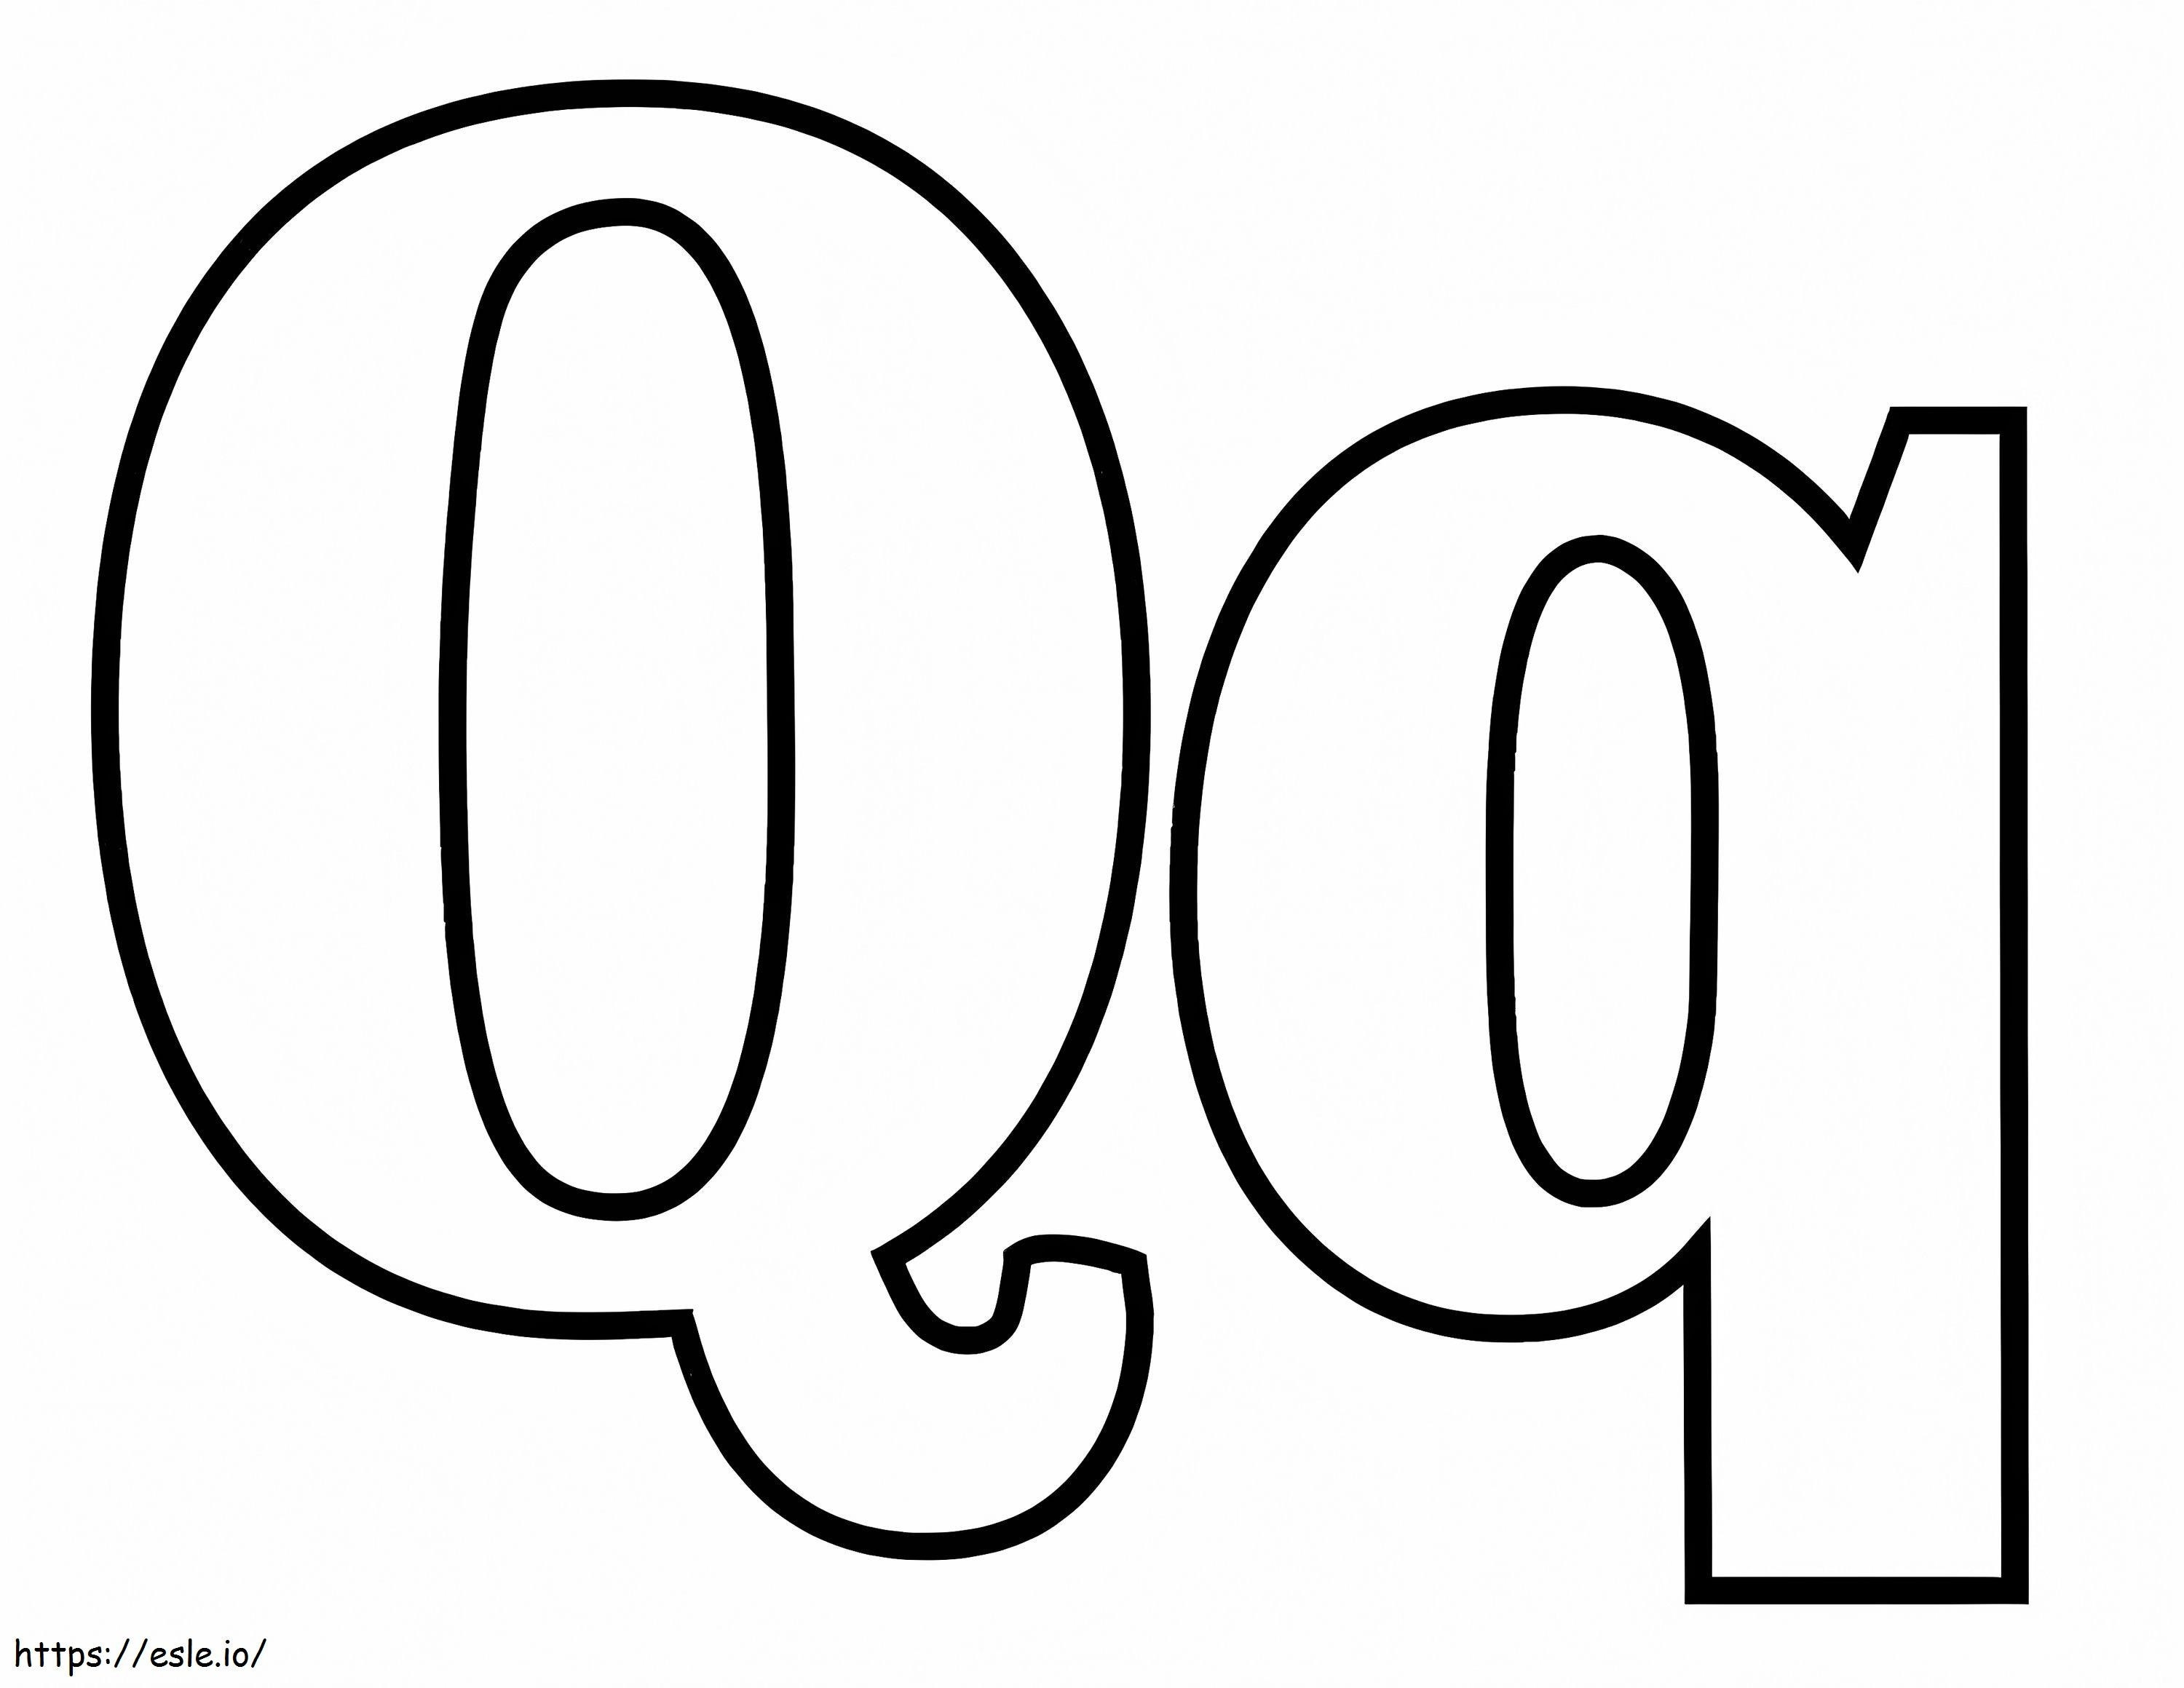 Buchstabe Q Q ausmalbilder